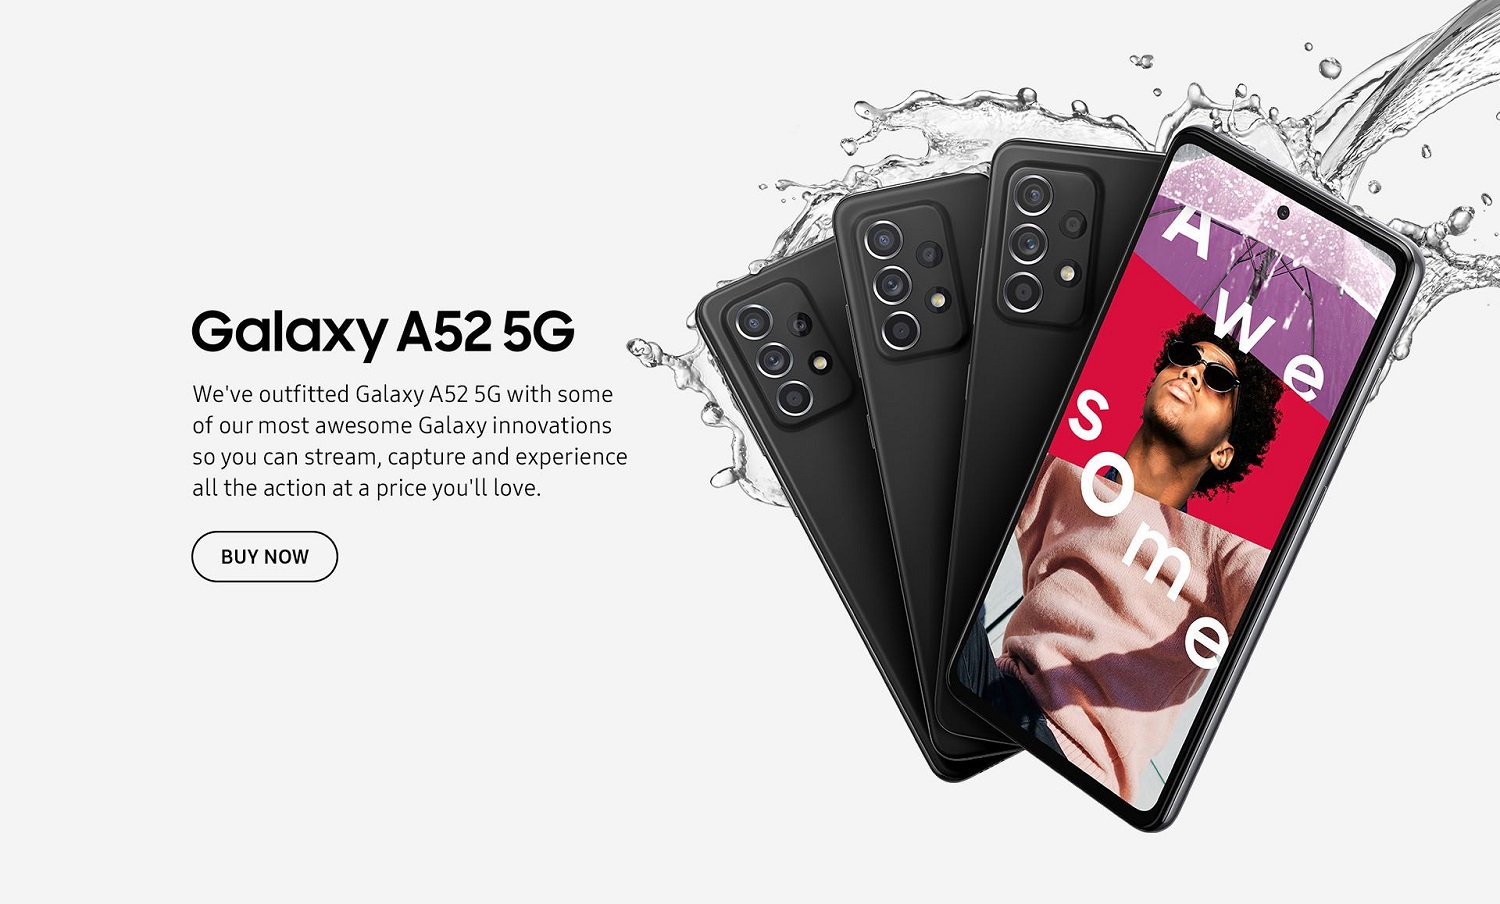 Официальные изображения Samsung Galaxy A72 и Galaxy A52 появились накануне анонса